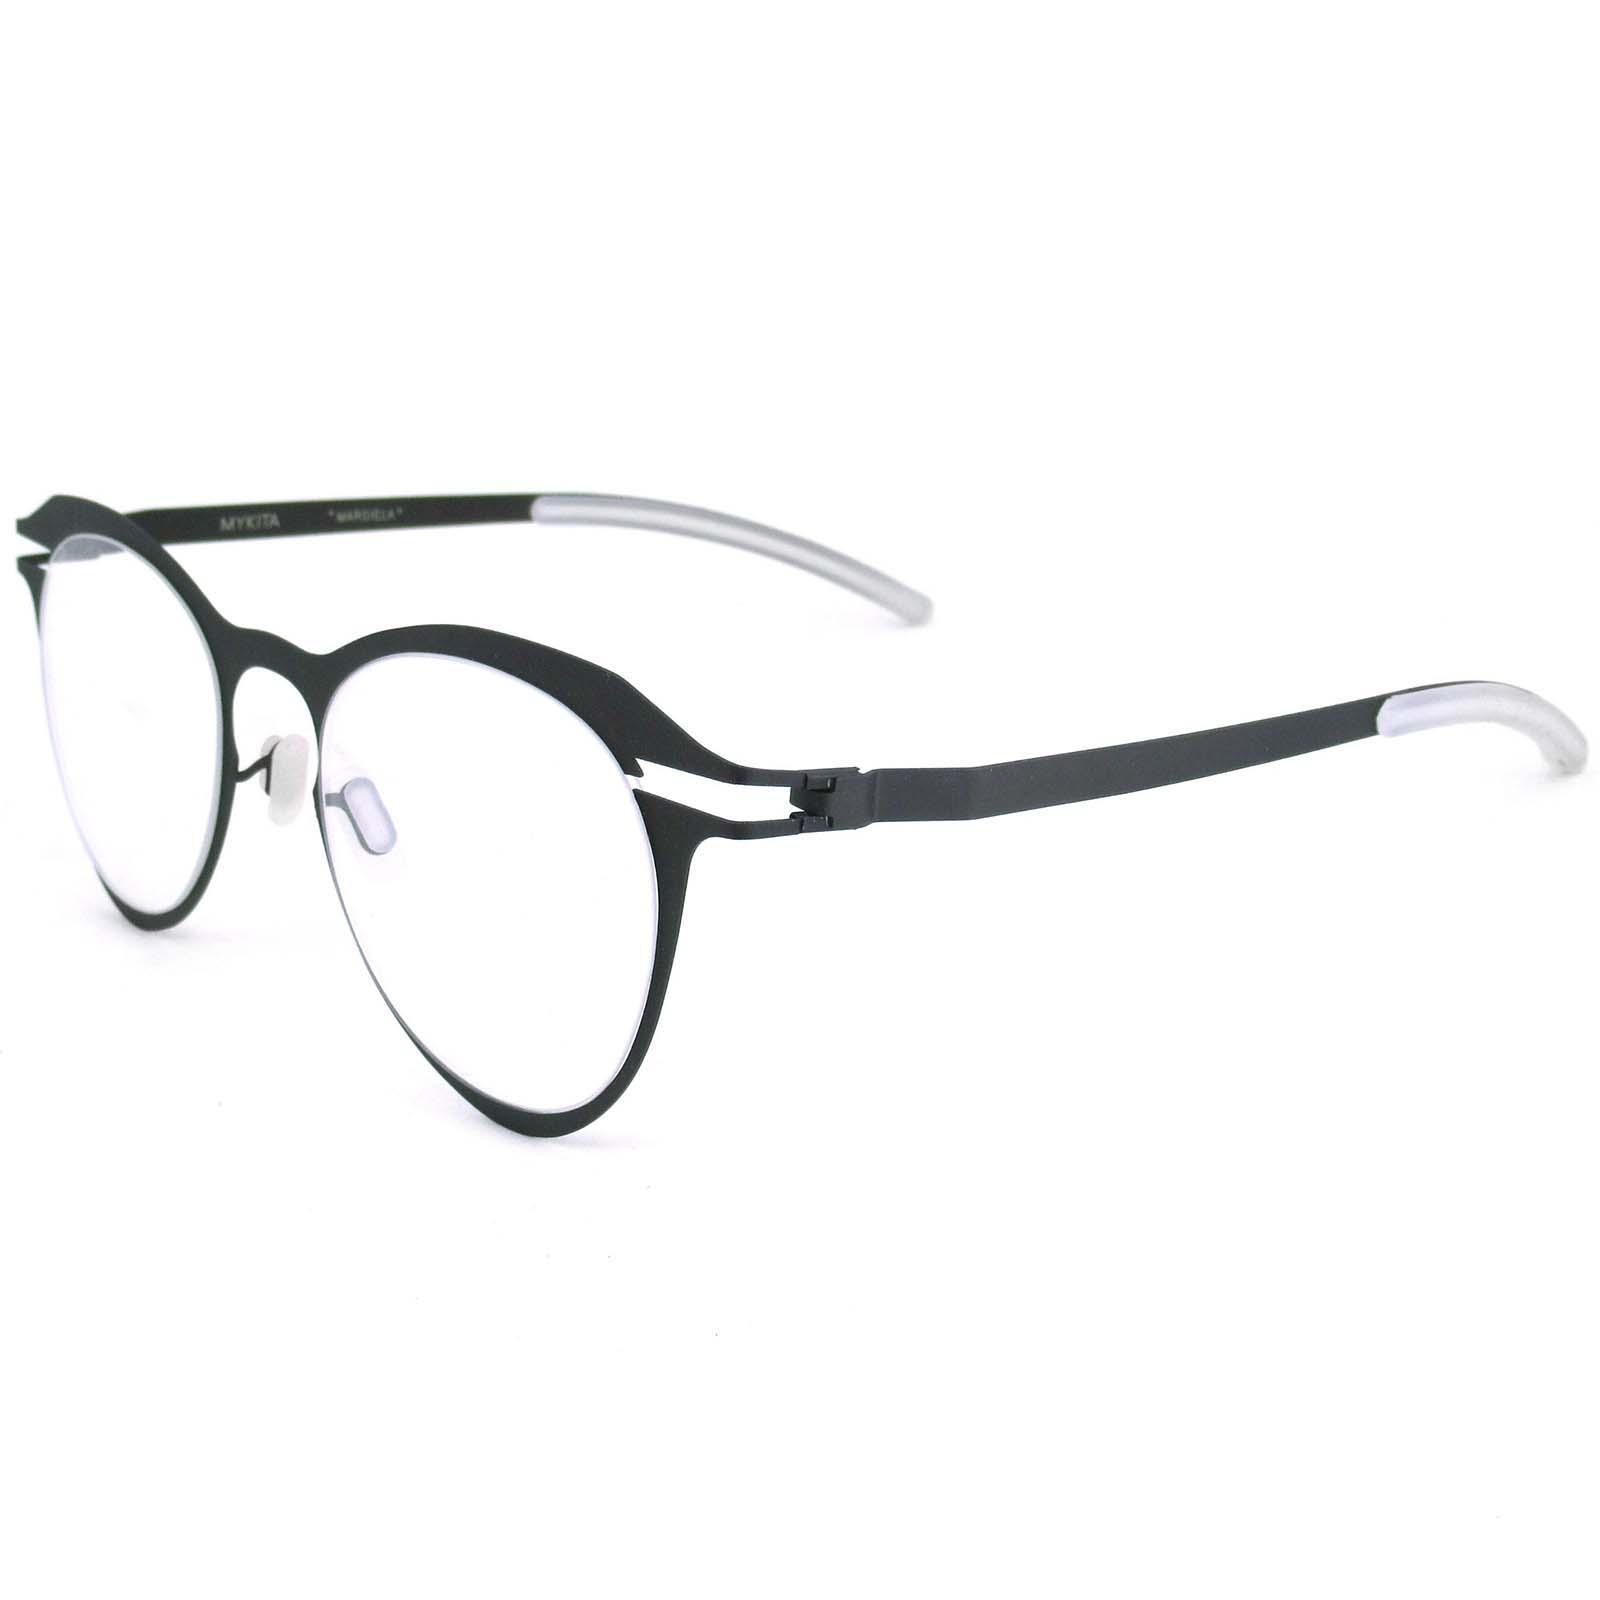 Fashion ISSEY MIYAKE แว่นตา ไม่ใช้น็อต รุ่น 30094 สีเทา MATERIAL GERMANY กรอบแว่นตา ( สำหรับตัดเลนส์ ) ไม่ใช้น็อต วัสดุ สแตนเลสสตีล หรือเหล็กกล้าไร้สนิม Stainless Steel ขาข้อต่อ กรอบแว่นตา EyewearTop Glasses